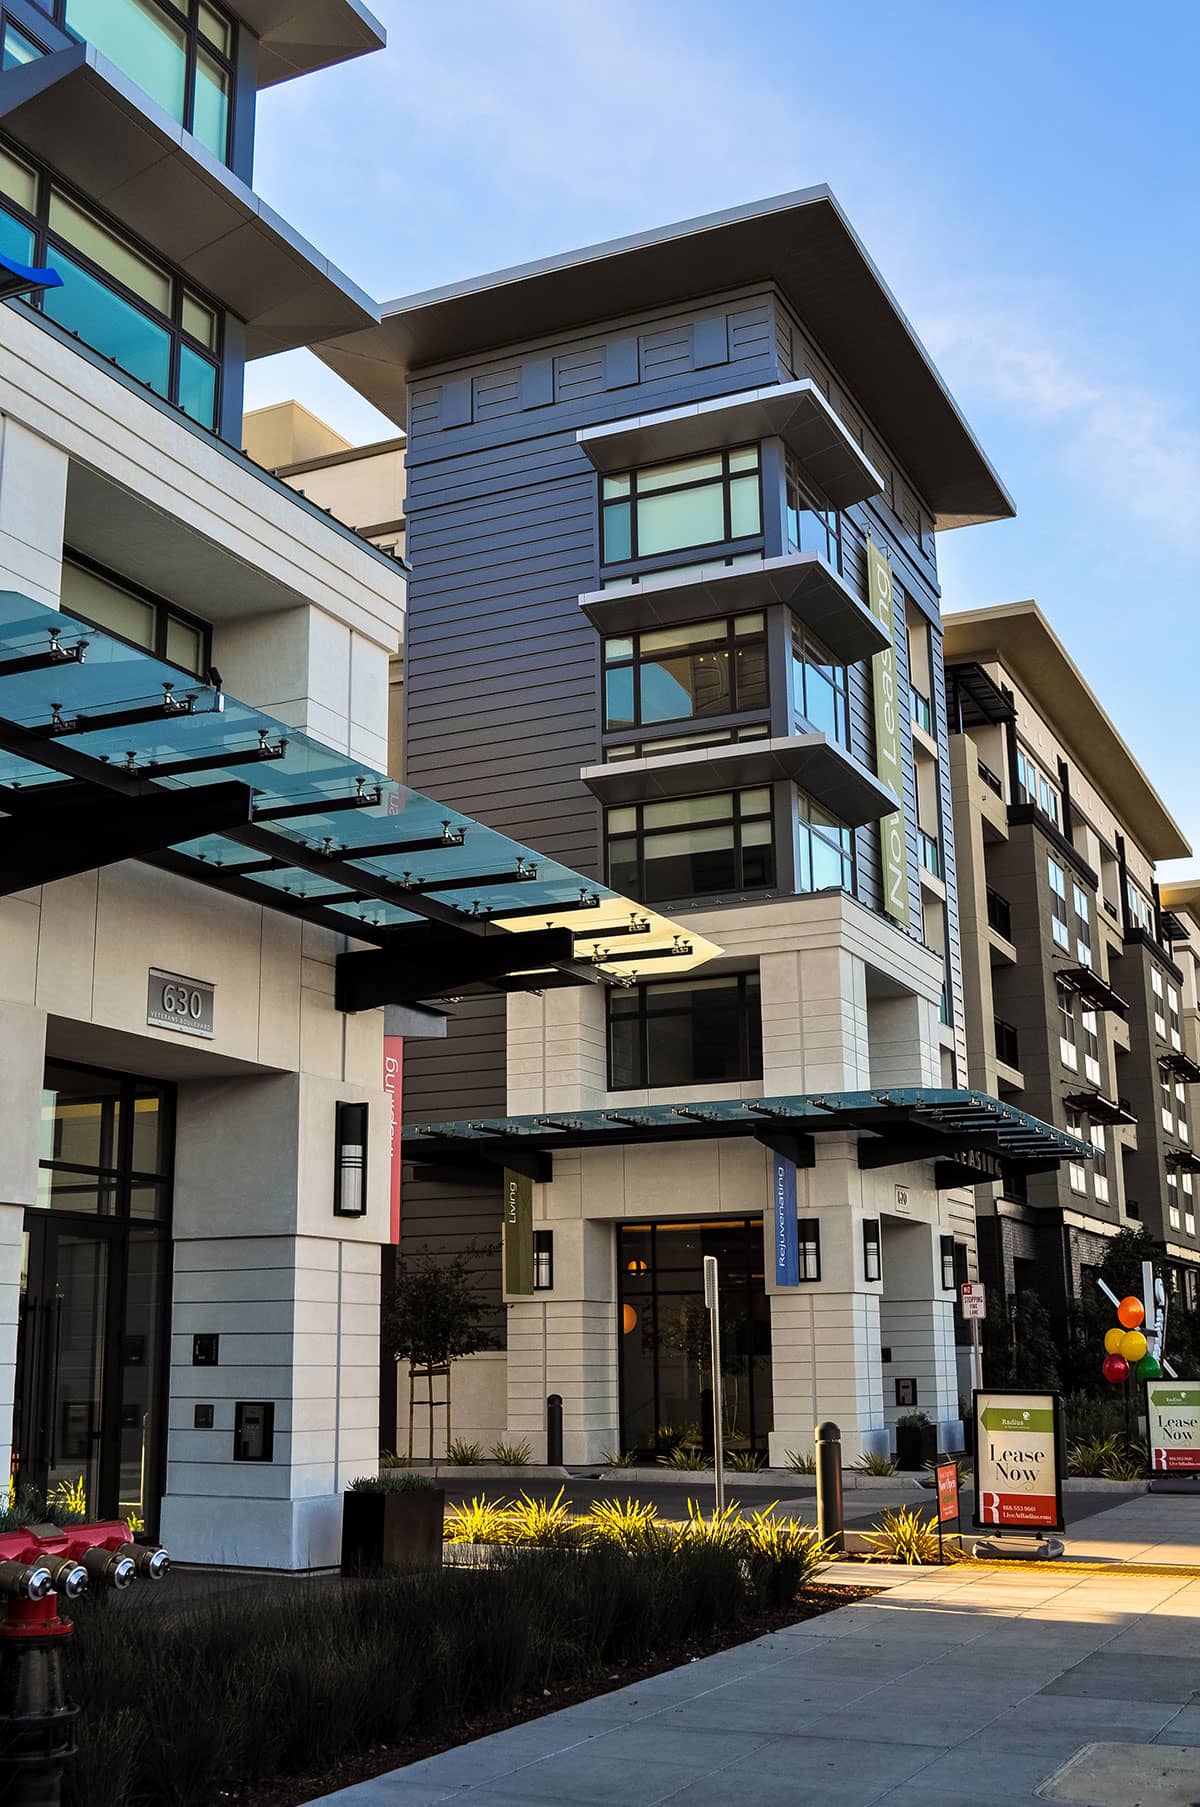 CBG’s Radius Apartments buildings located at 620 Veterans Blvd Redwood City, CA 94063.